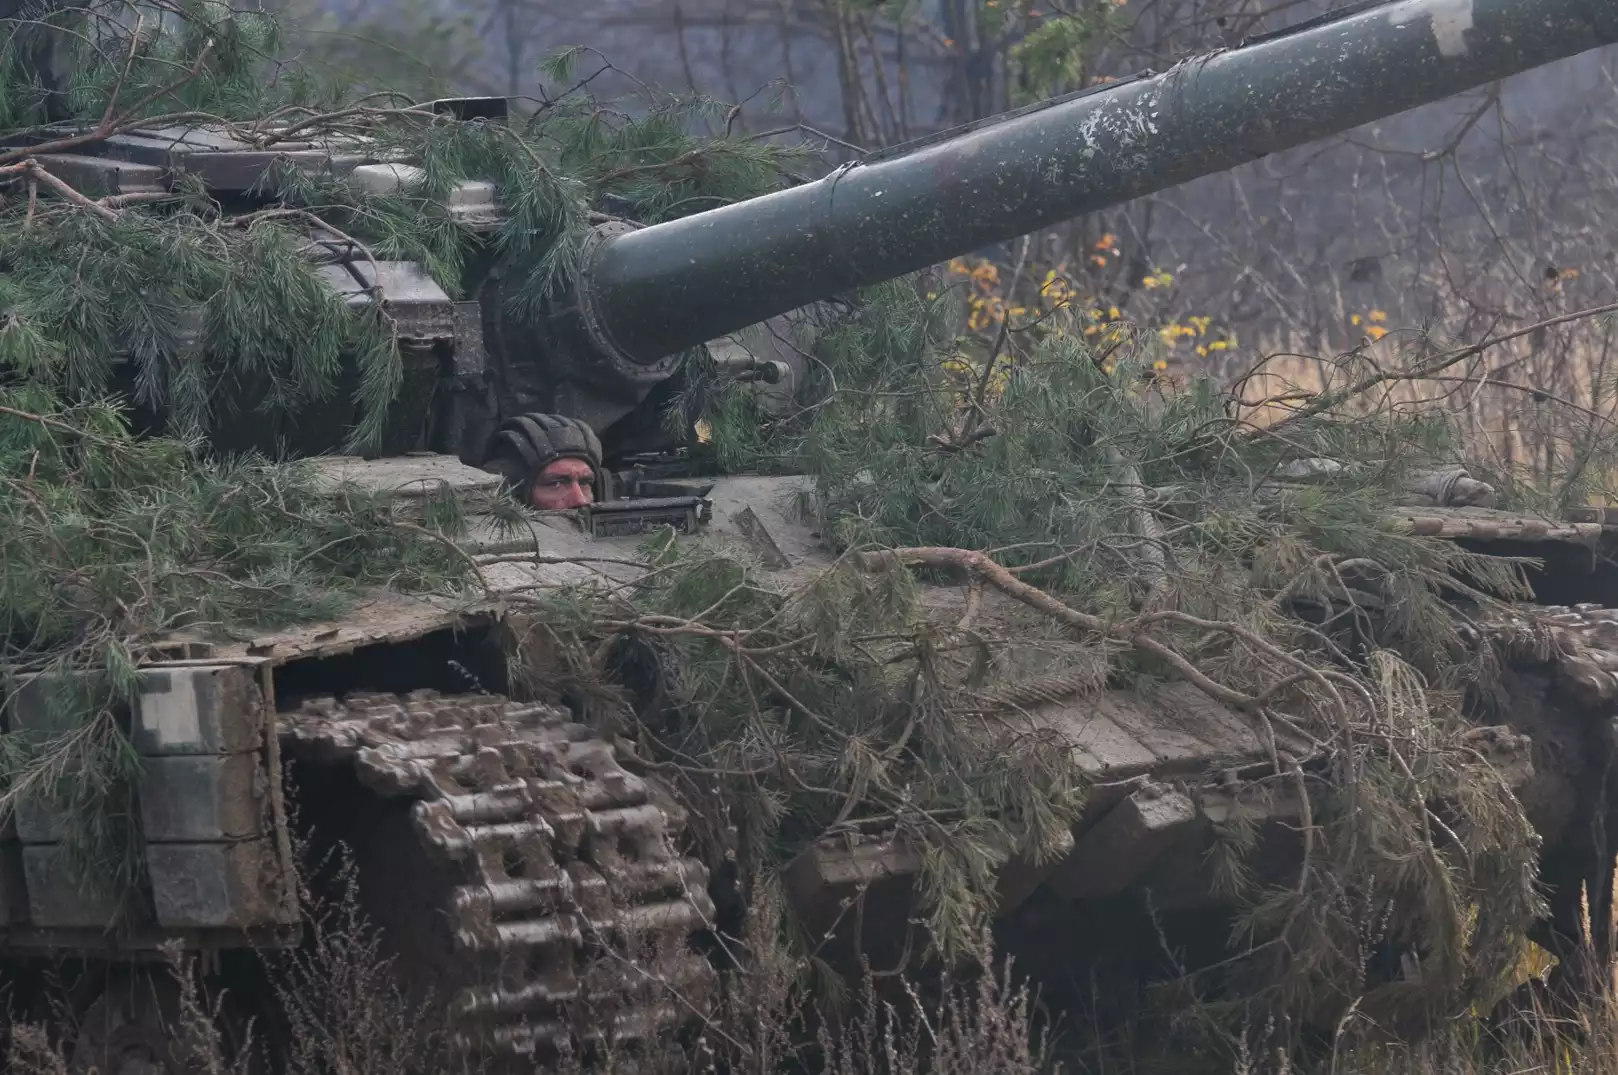 Char T-64 (93e brigade mécanisée ukrainienne) durant un entrainement au niveau du bataillon au sein de la base d'entrainement internationale de Yavoriv en Ukraine (31 nov 2019).